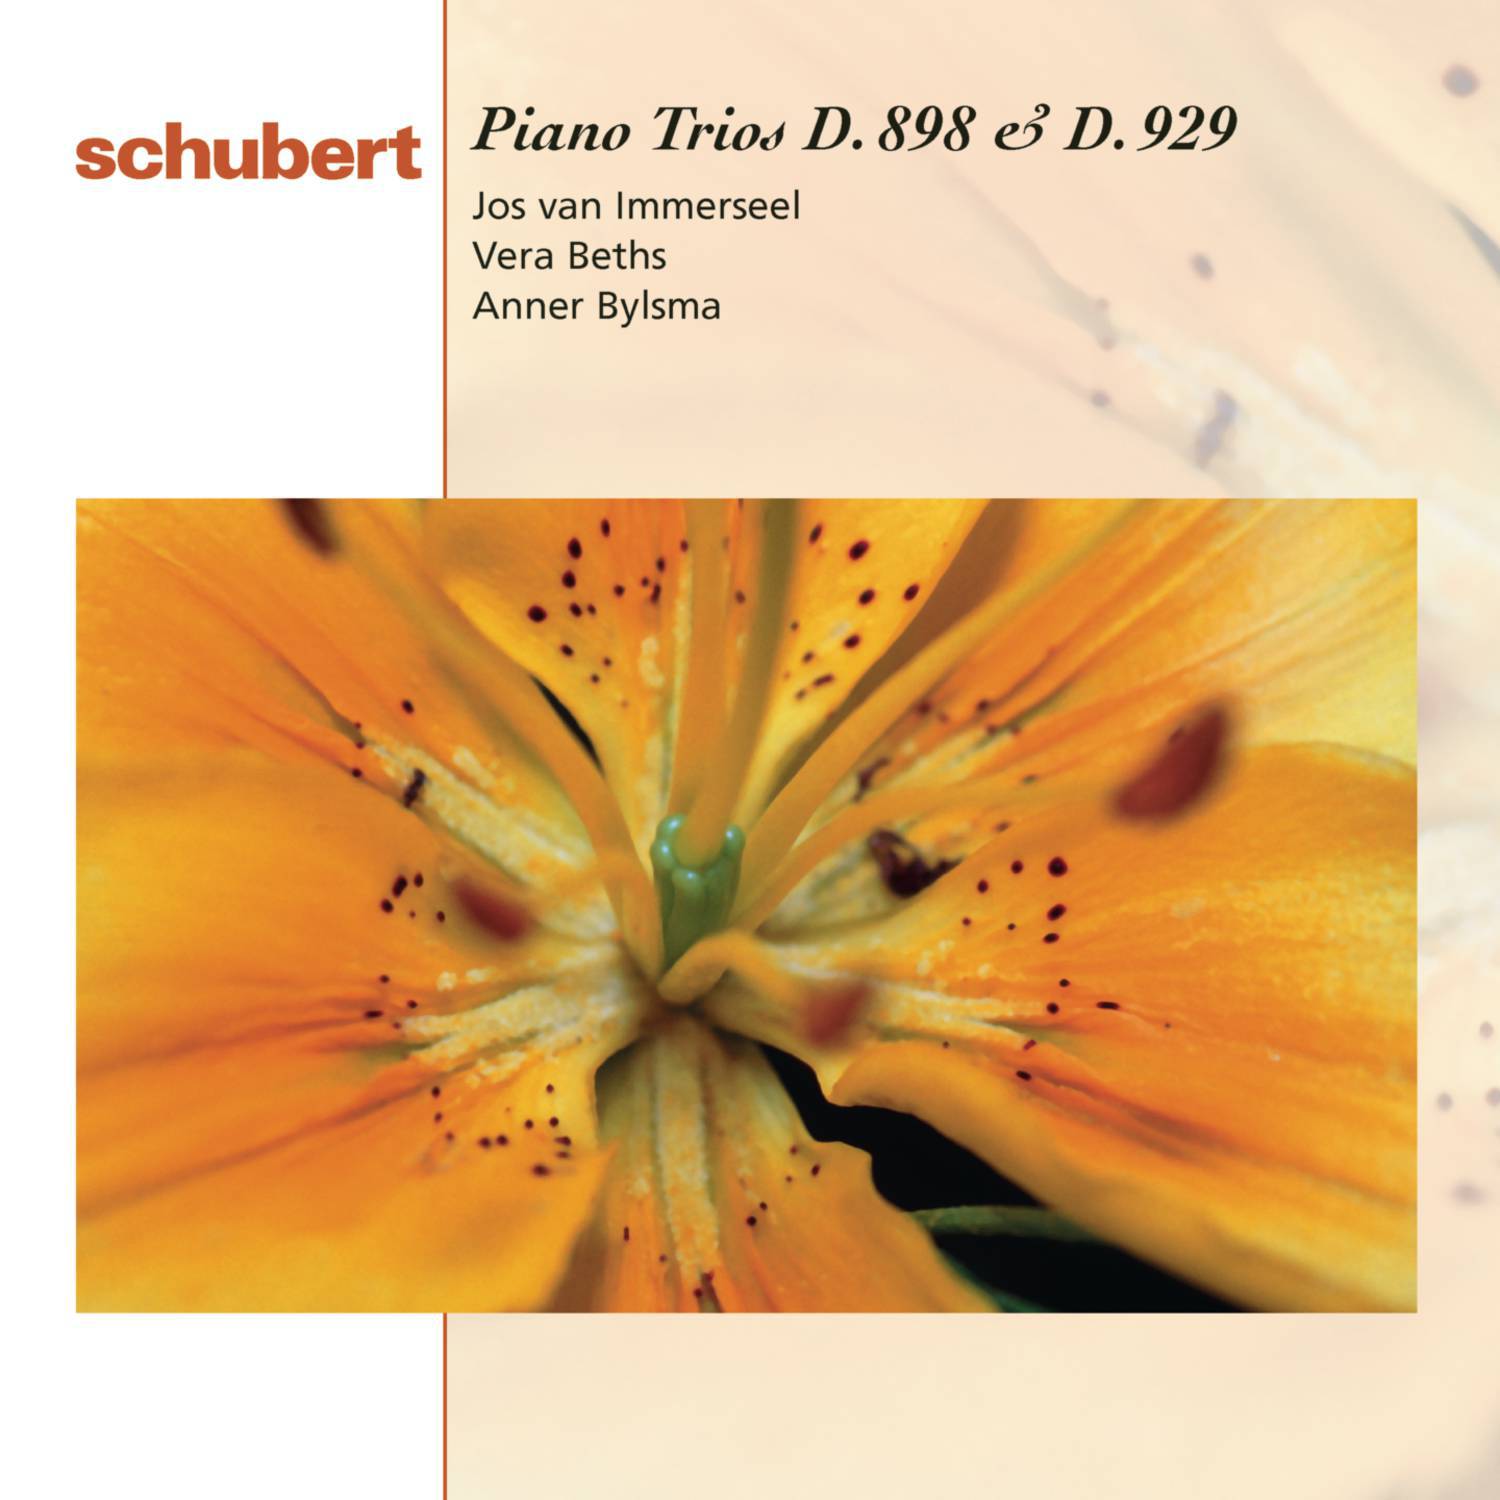 Piano Trio No. 2 in E-Flat Major, D. 929, Op. 100: IV. Allegro moderato